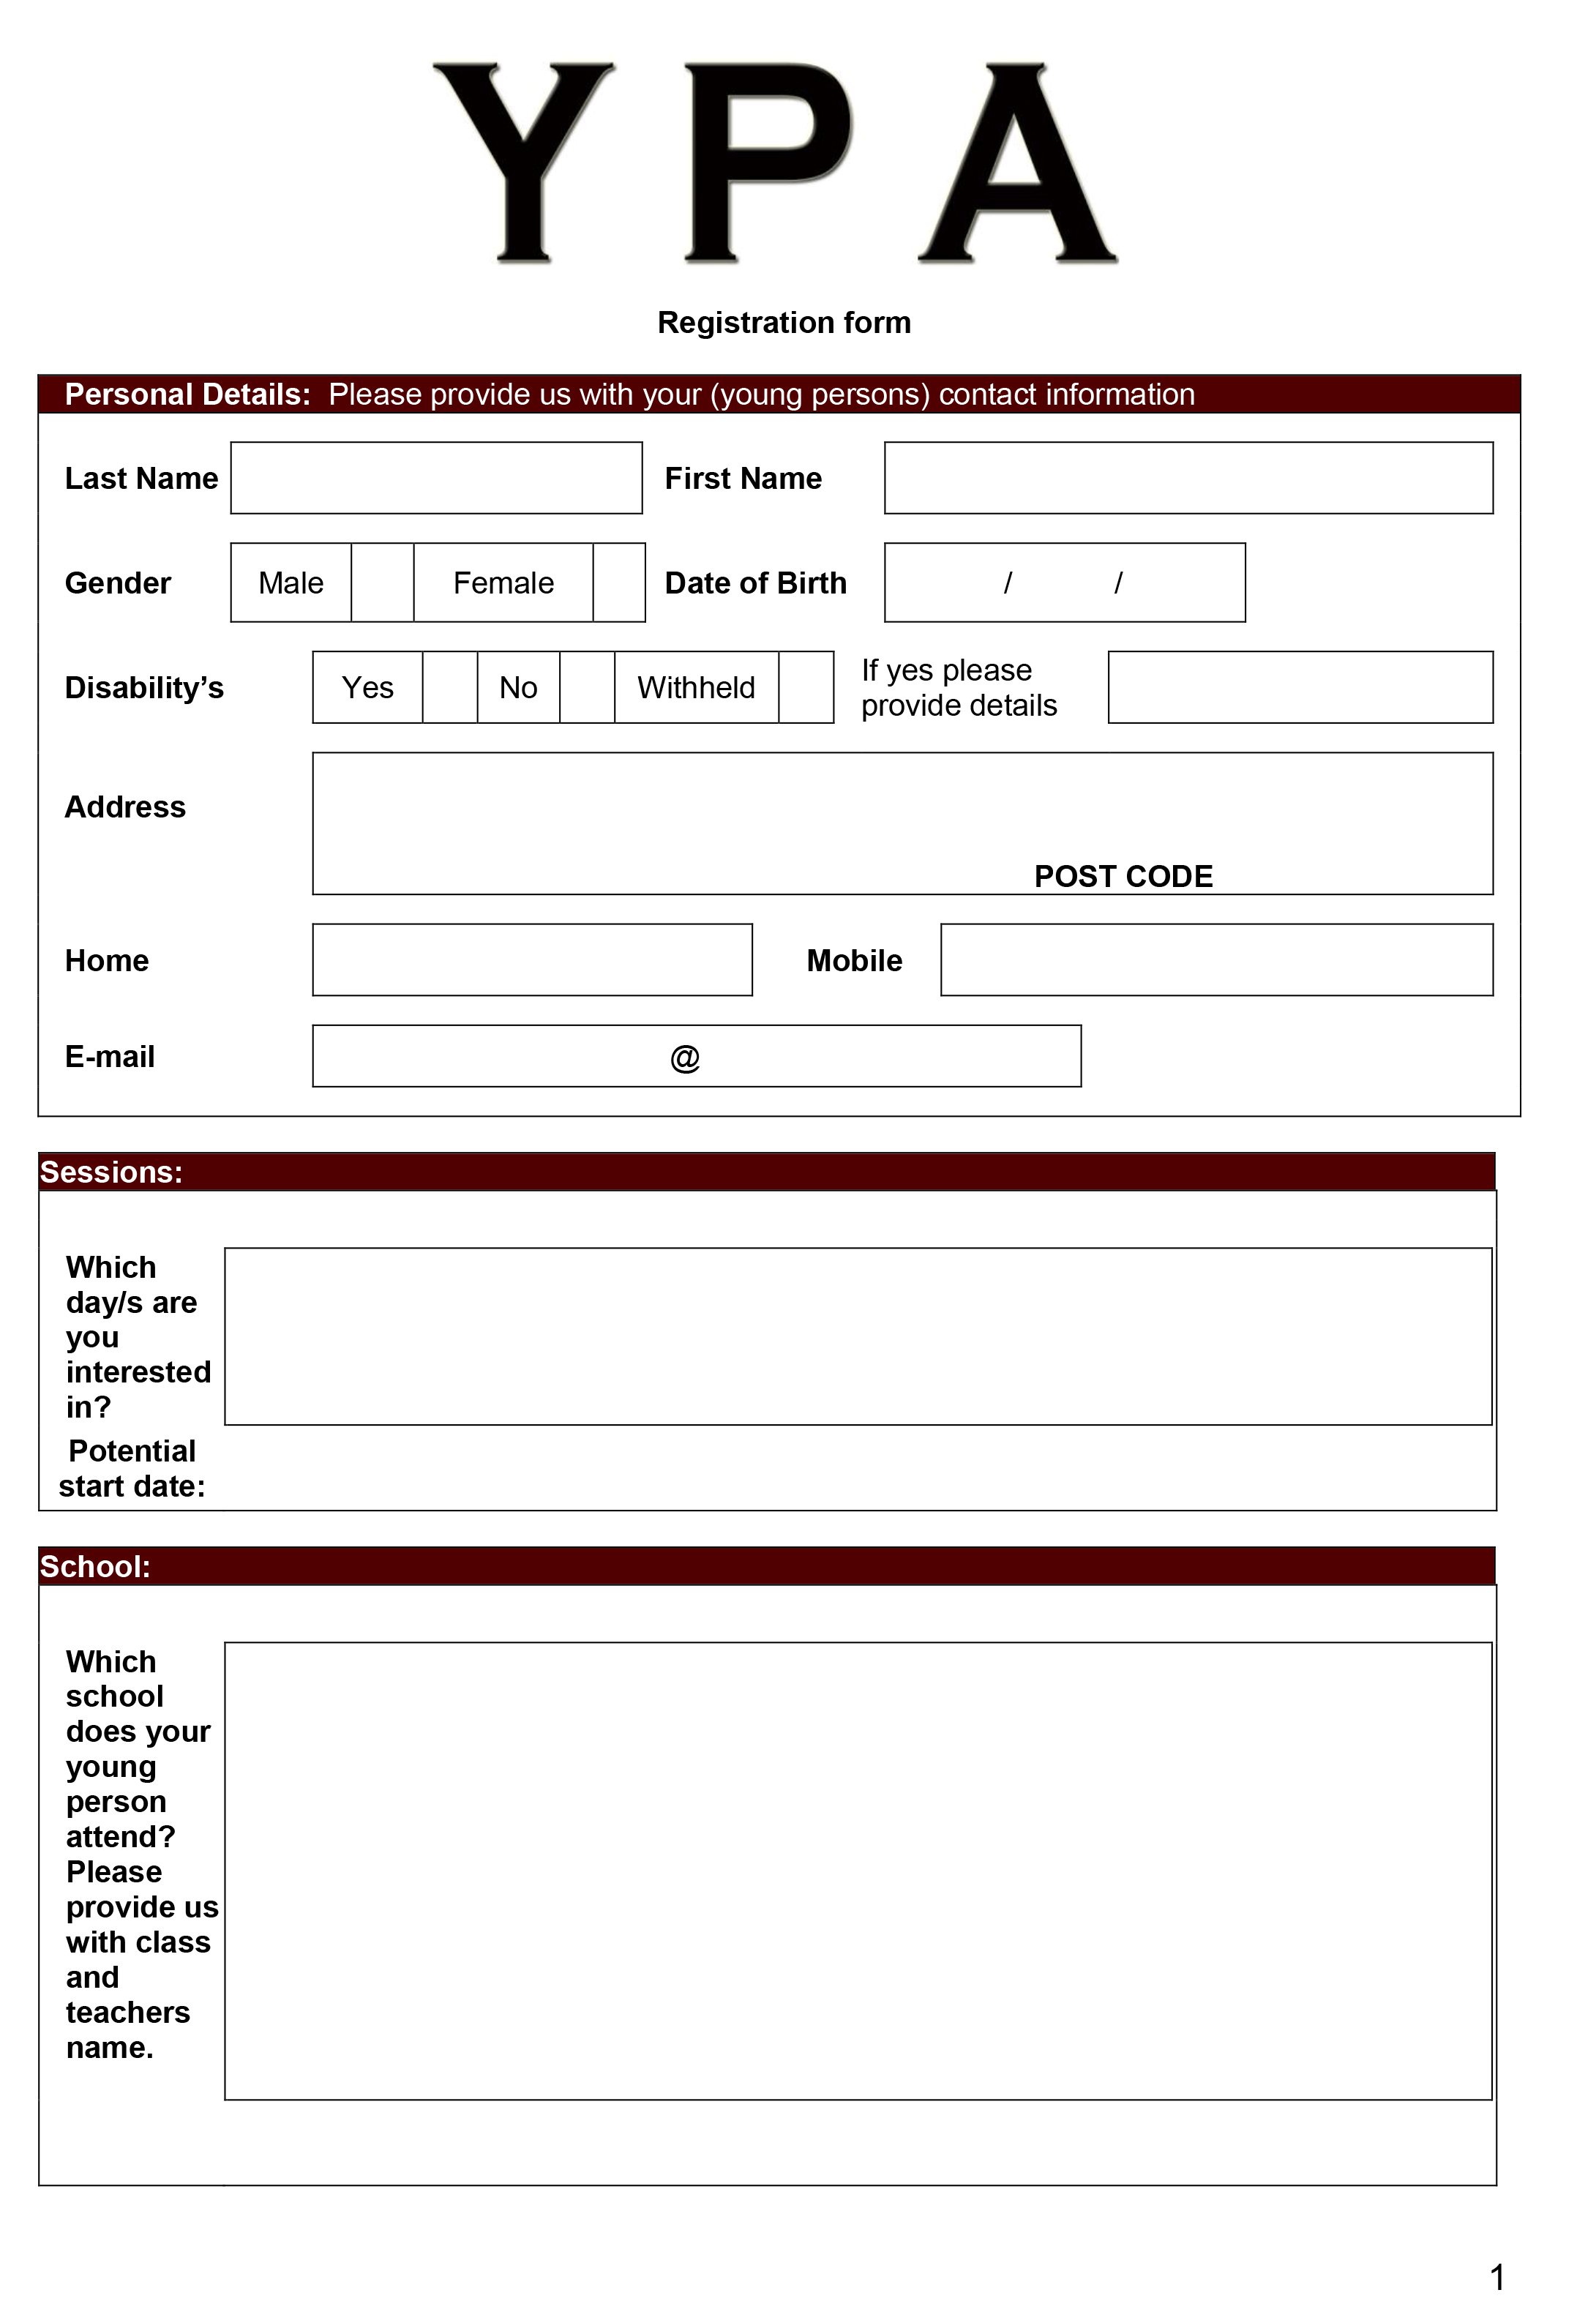 YPA parent application form